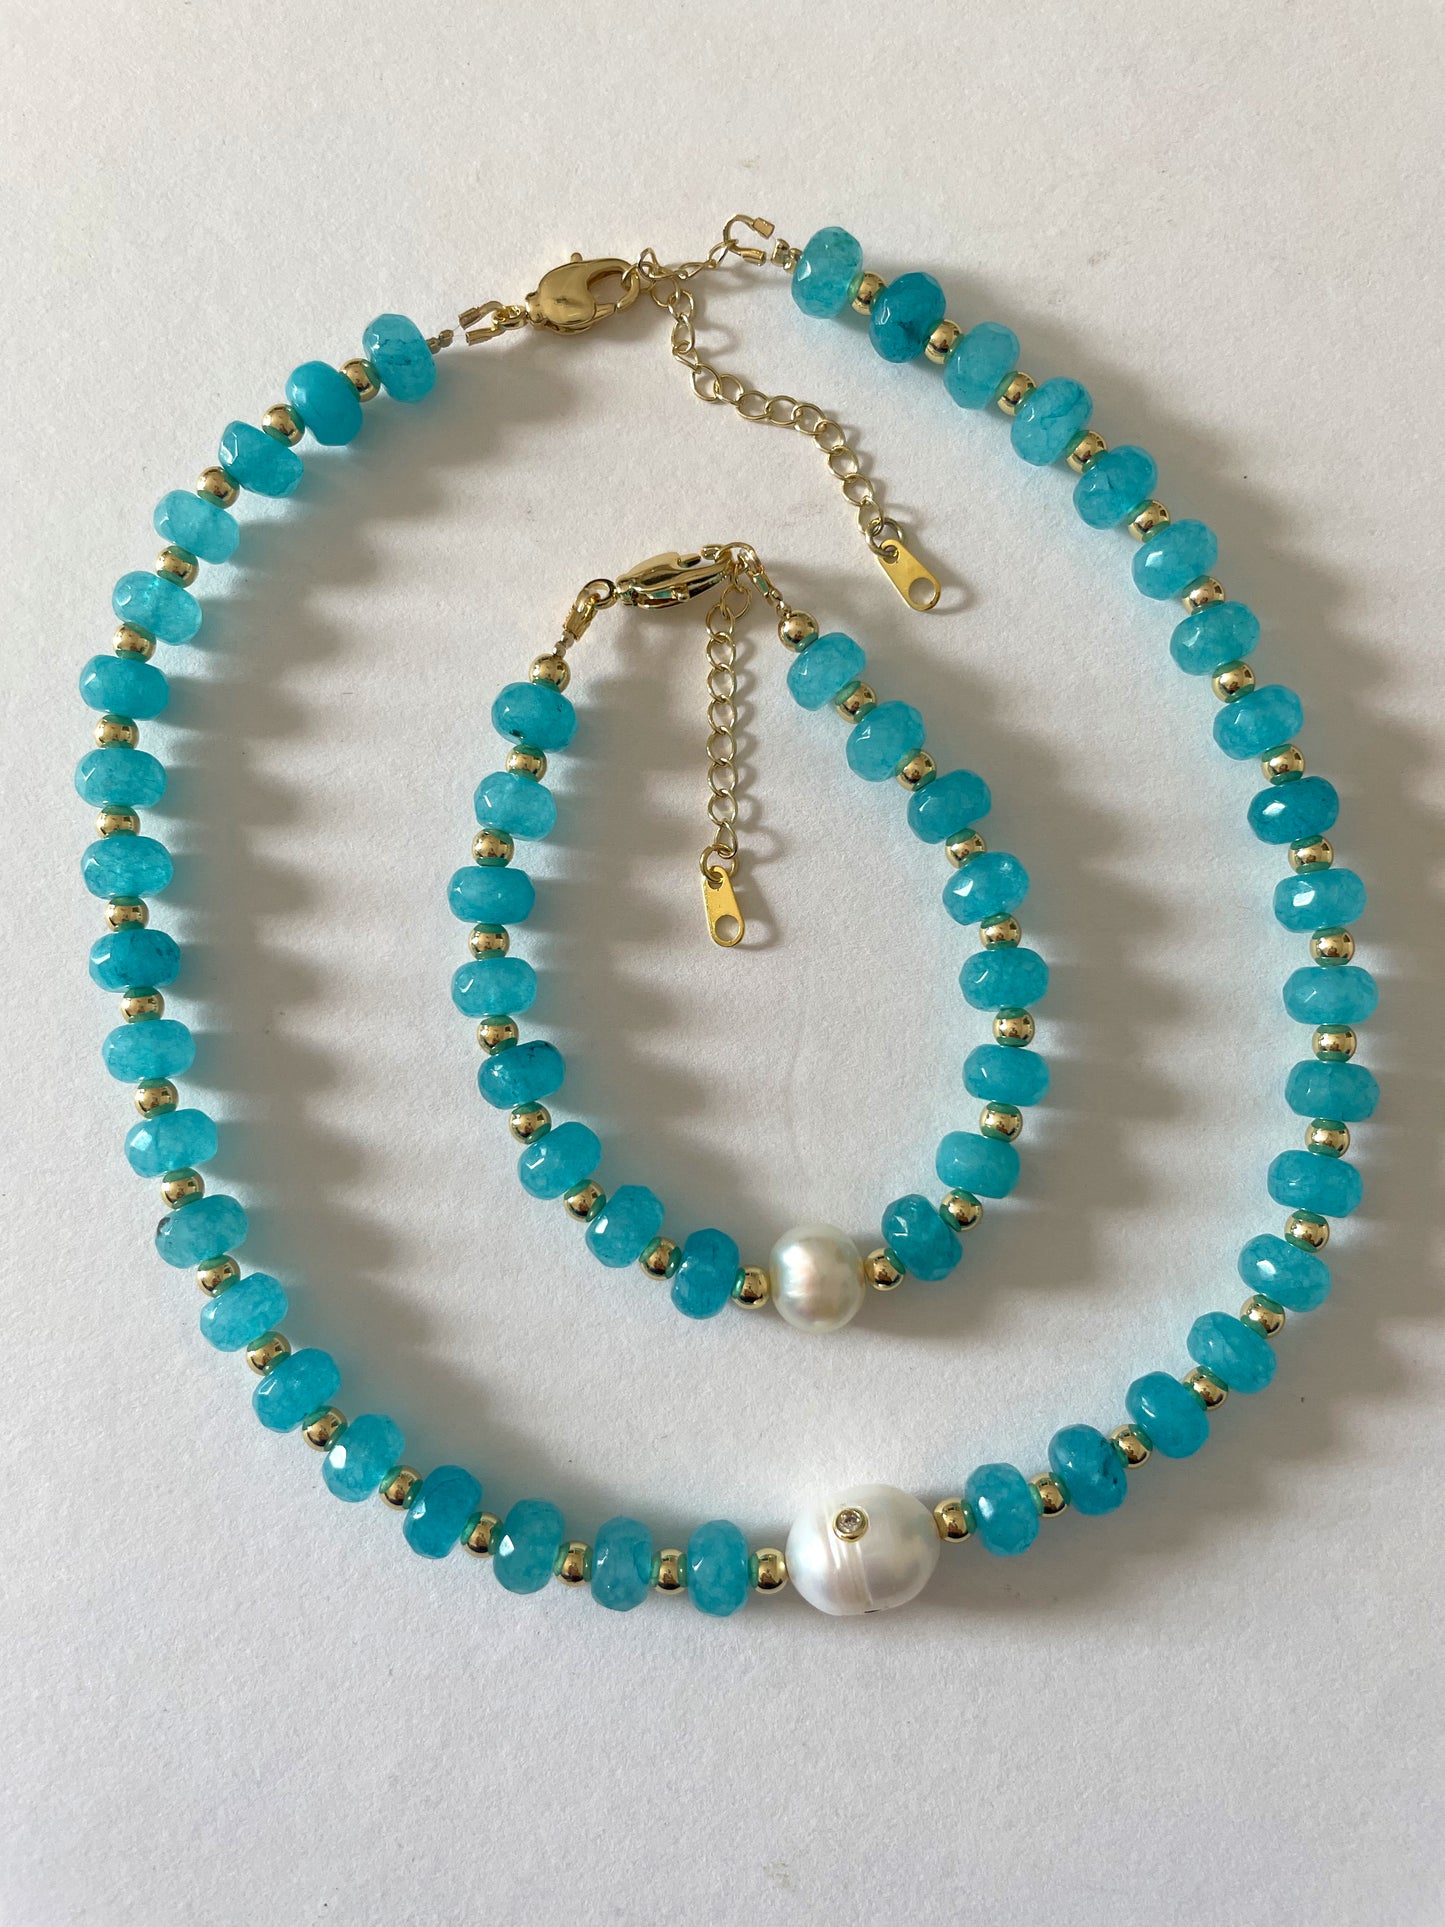 Parisian blue necklace and bracelet